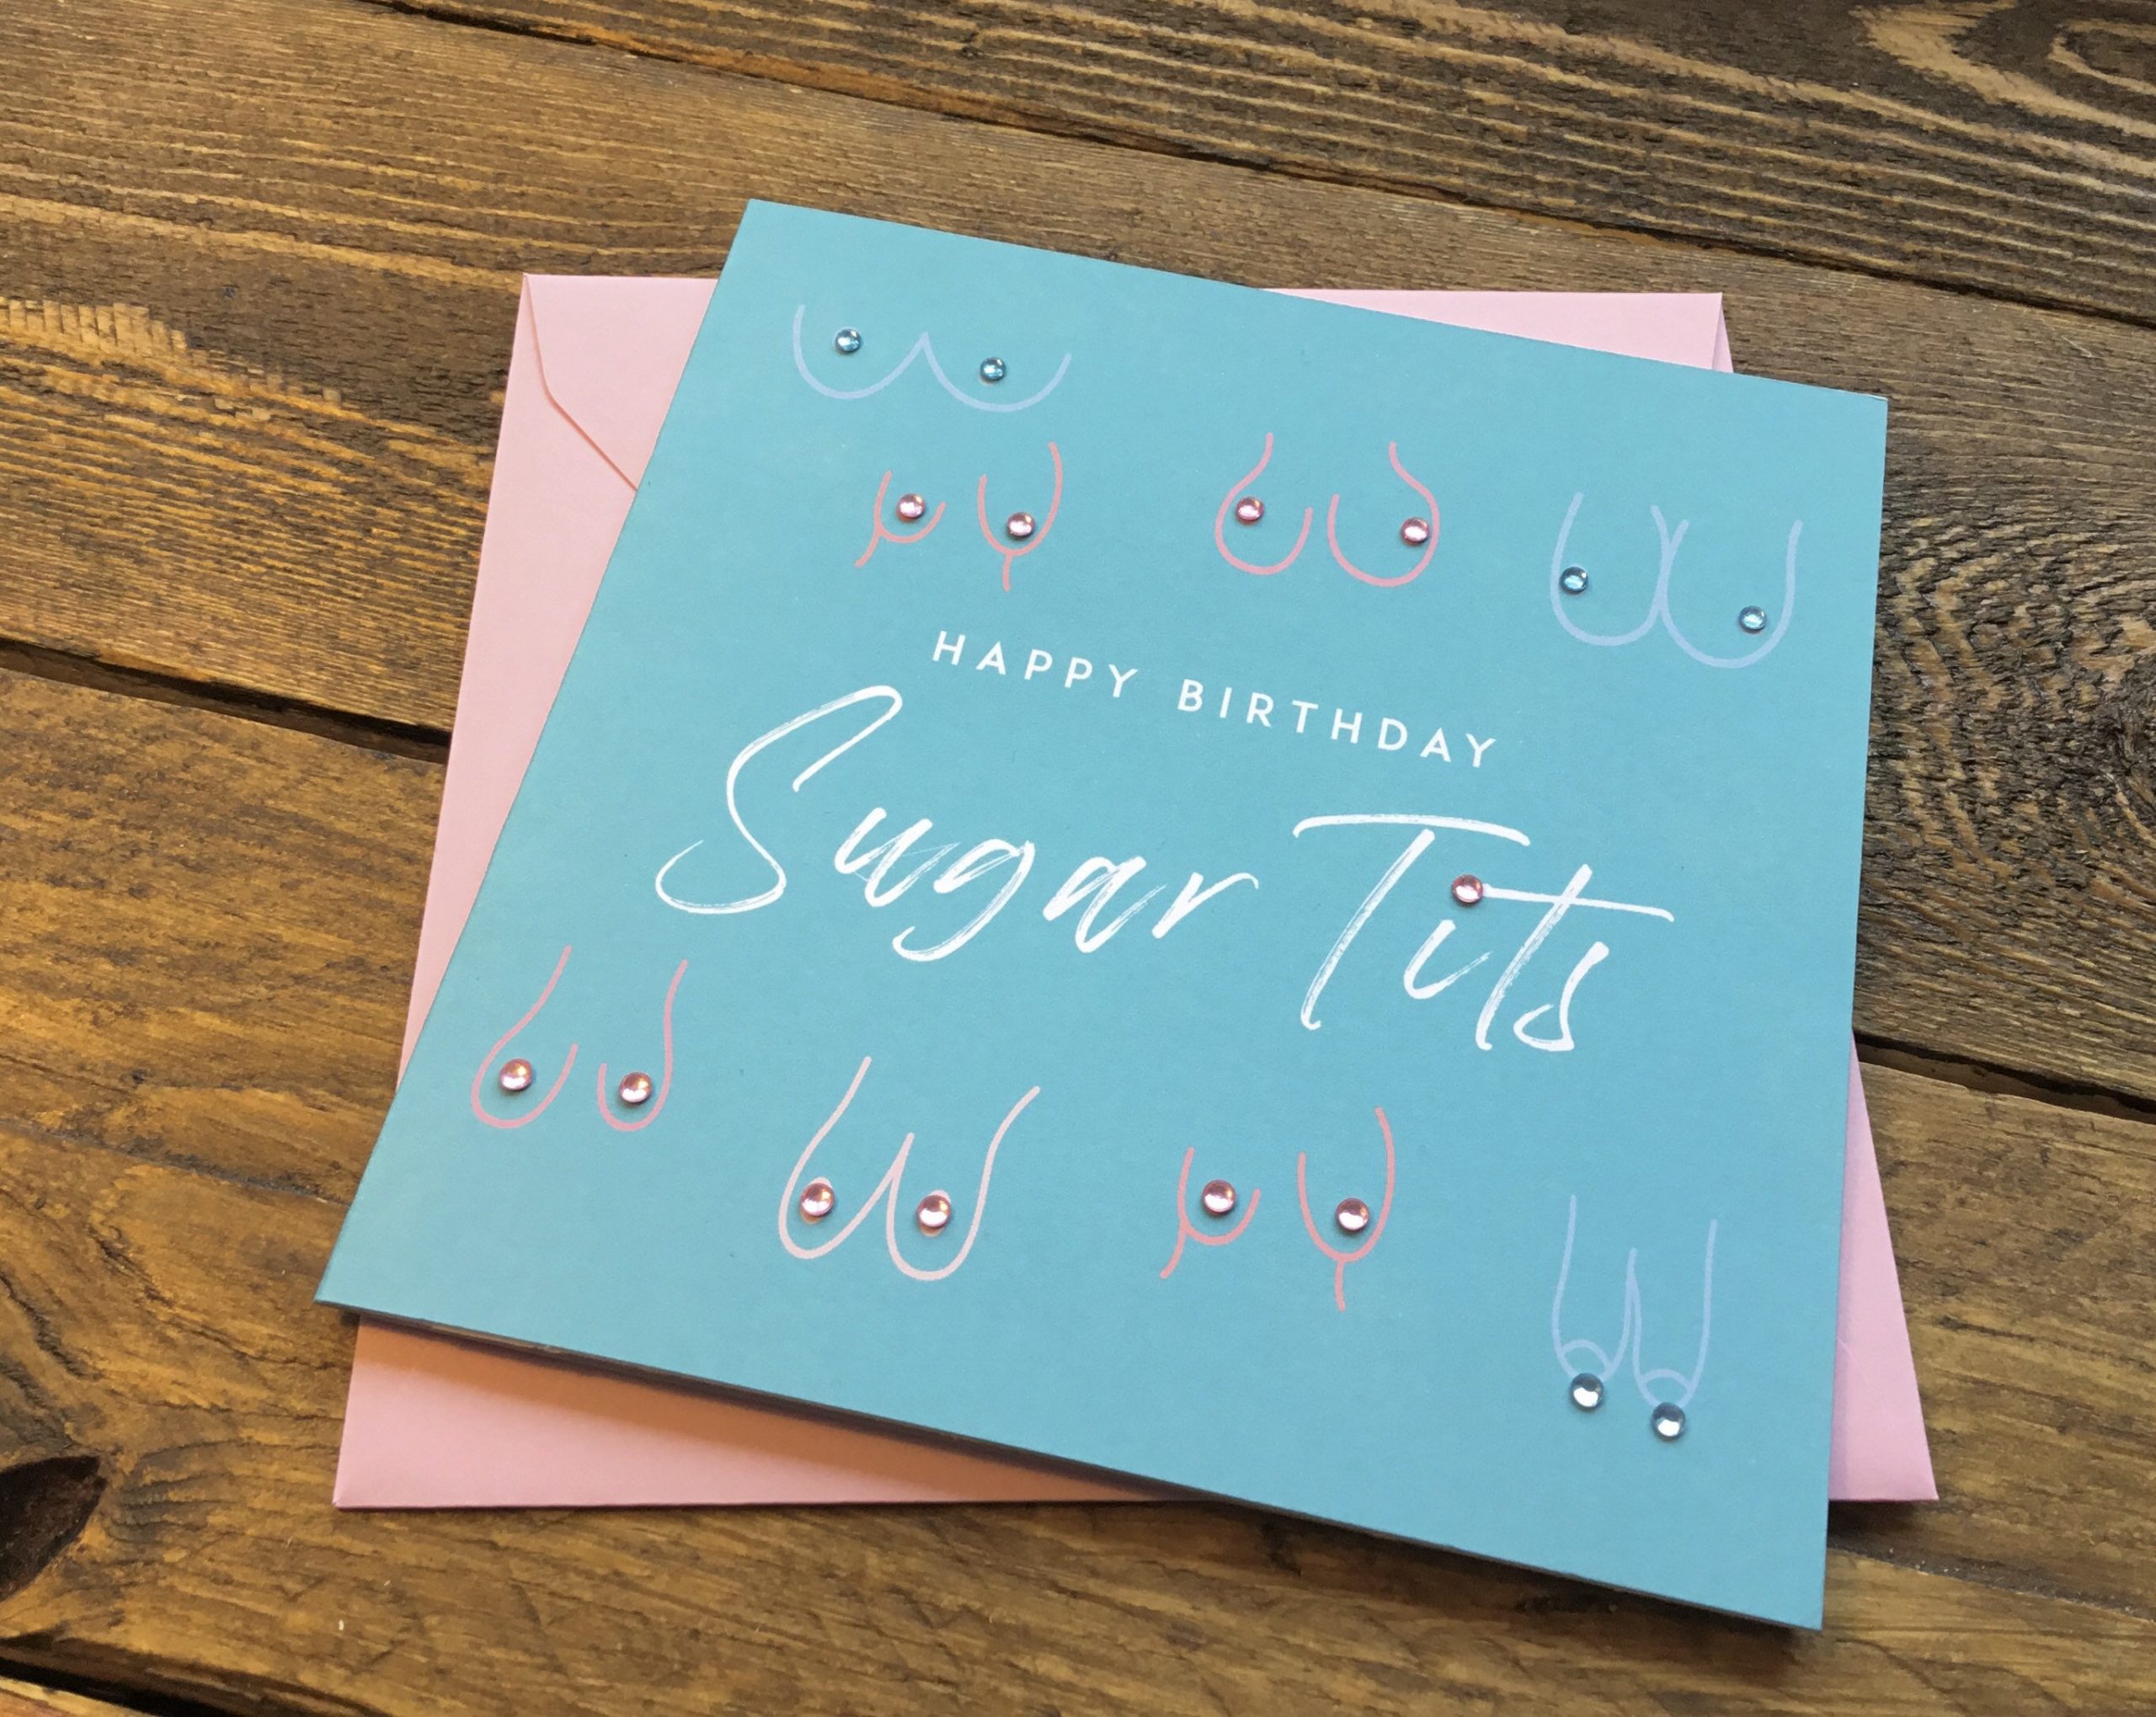 Funny Birthday Card For Her Happy Birthday Sugar Gothink Creative